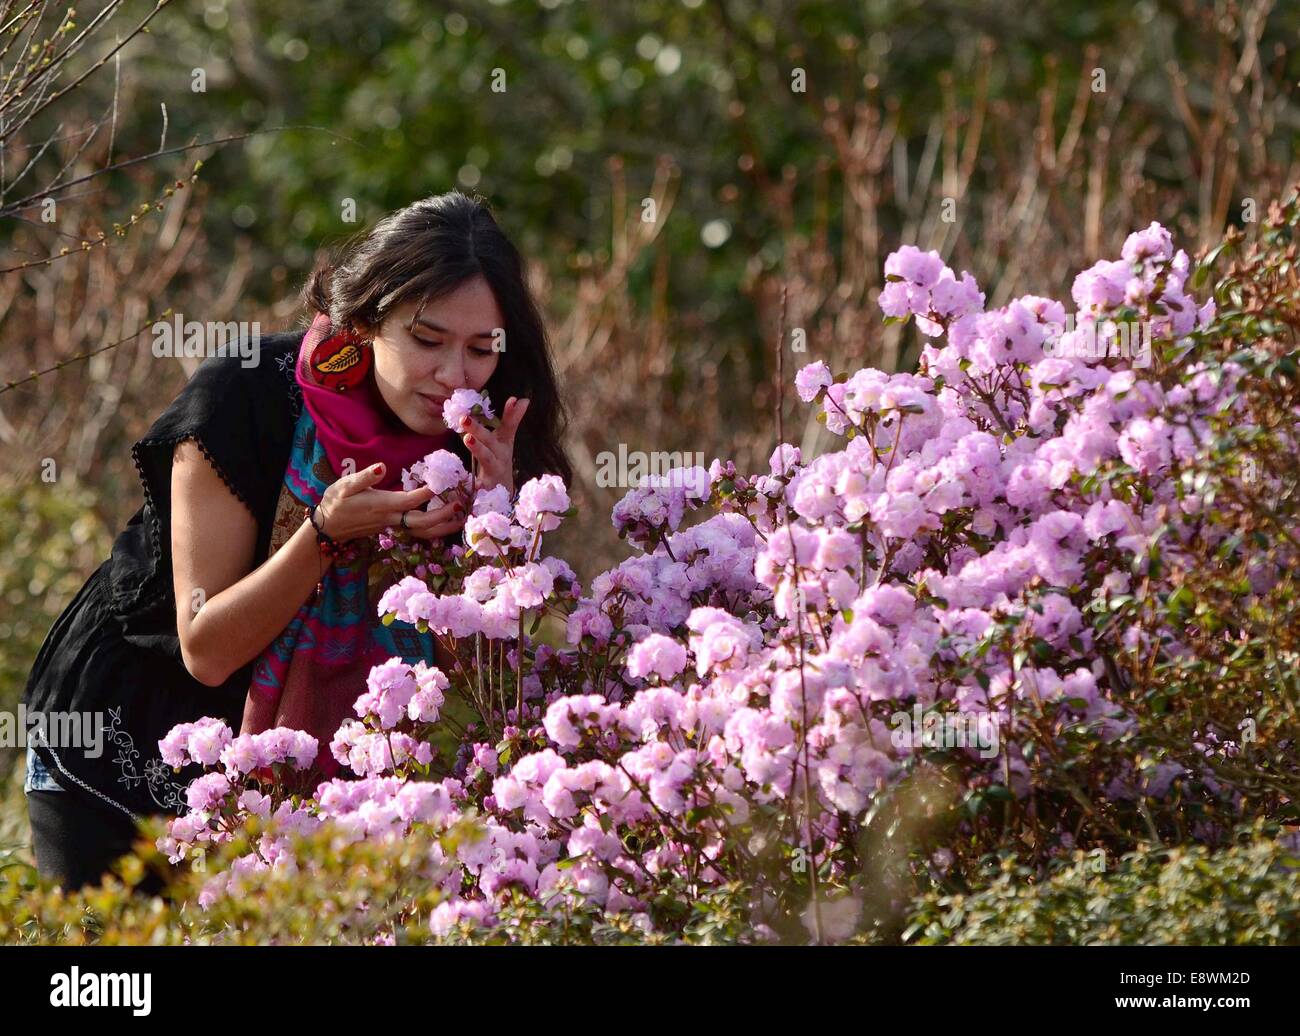 Studente Ritti Soncco ammira alcuni primavera sbocciano i fiori in Seaton Park, Aberdeen Foto Stock